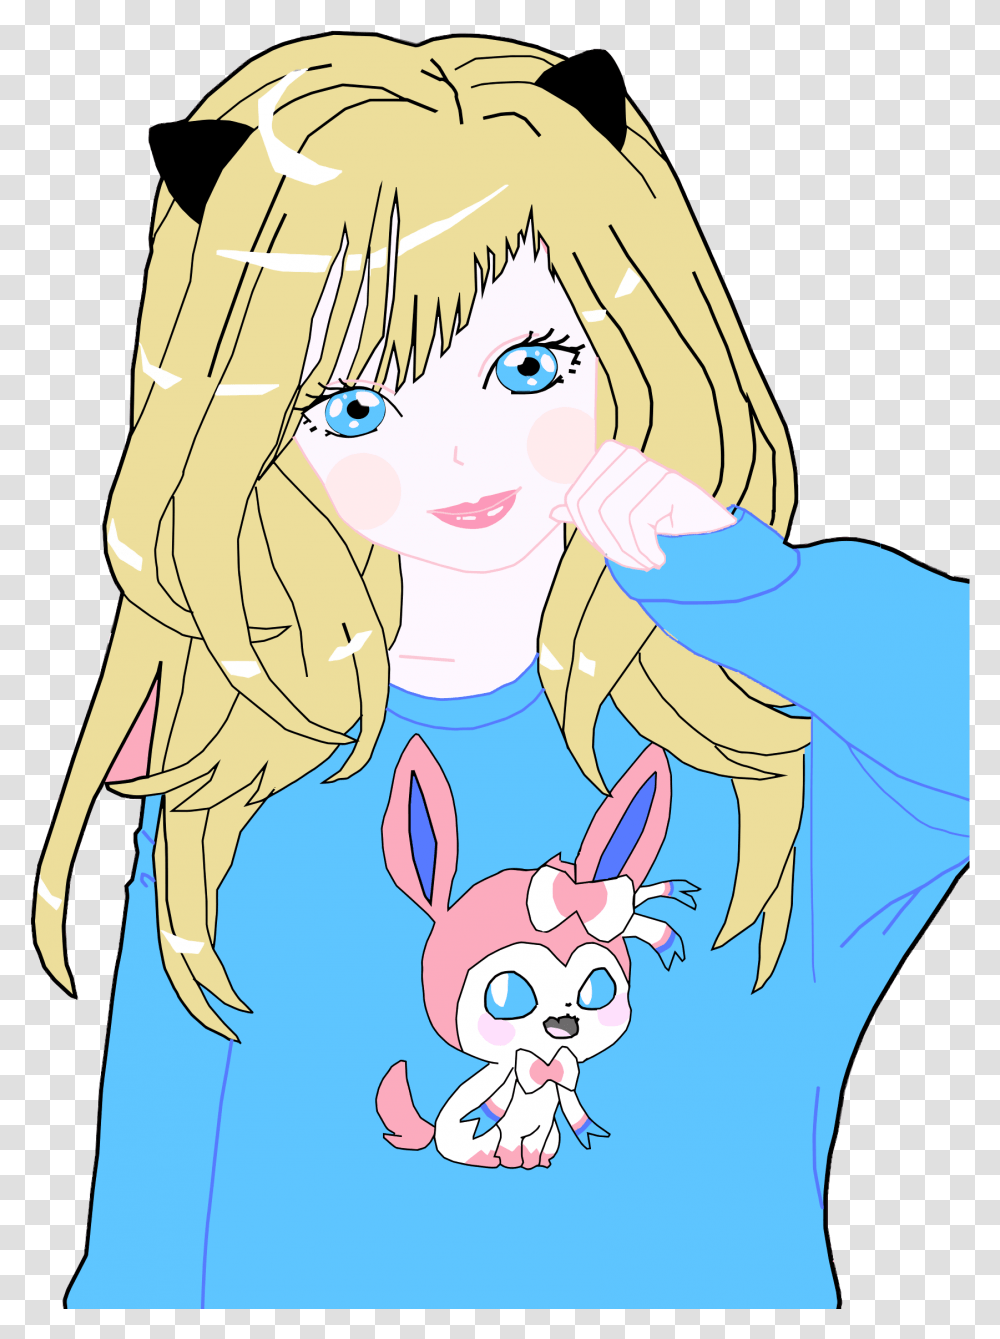 Design Of Blonde Anime Cat Girl Clip Art Girl Anime, Comics, Book, Manga, Graphics Transparent Png